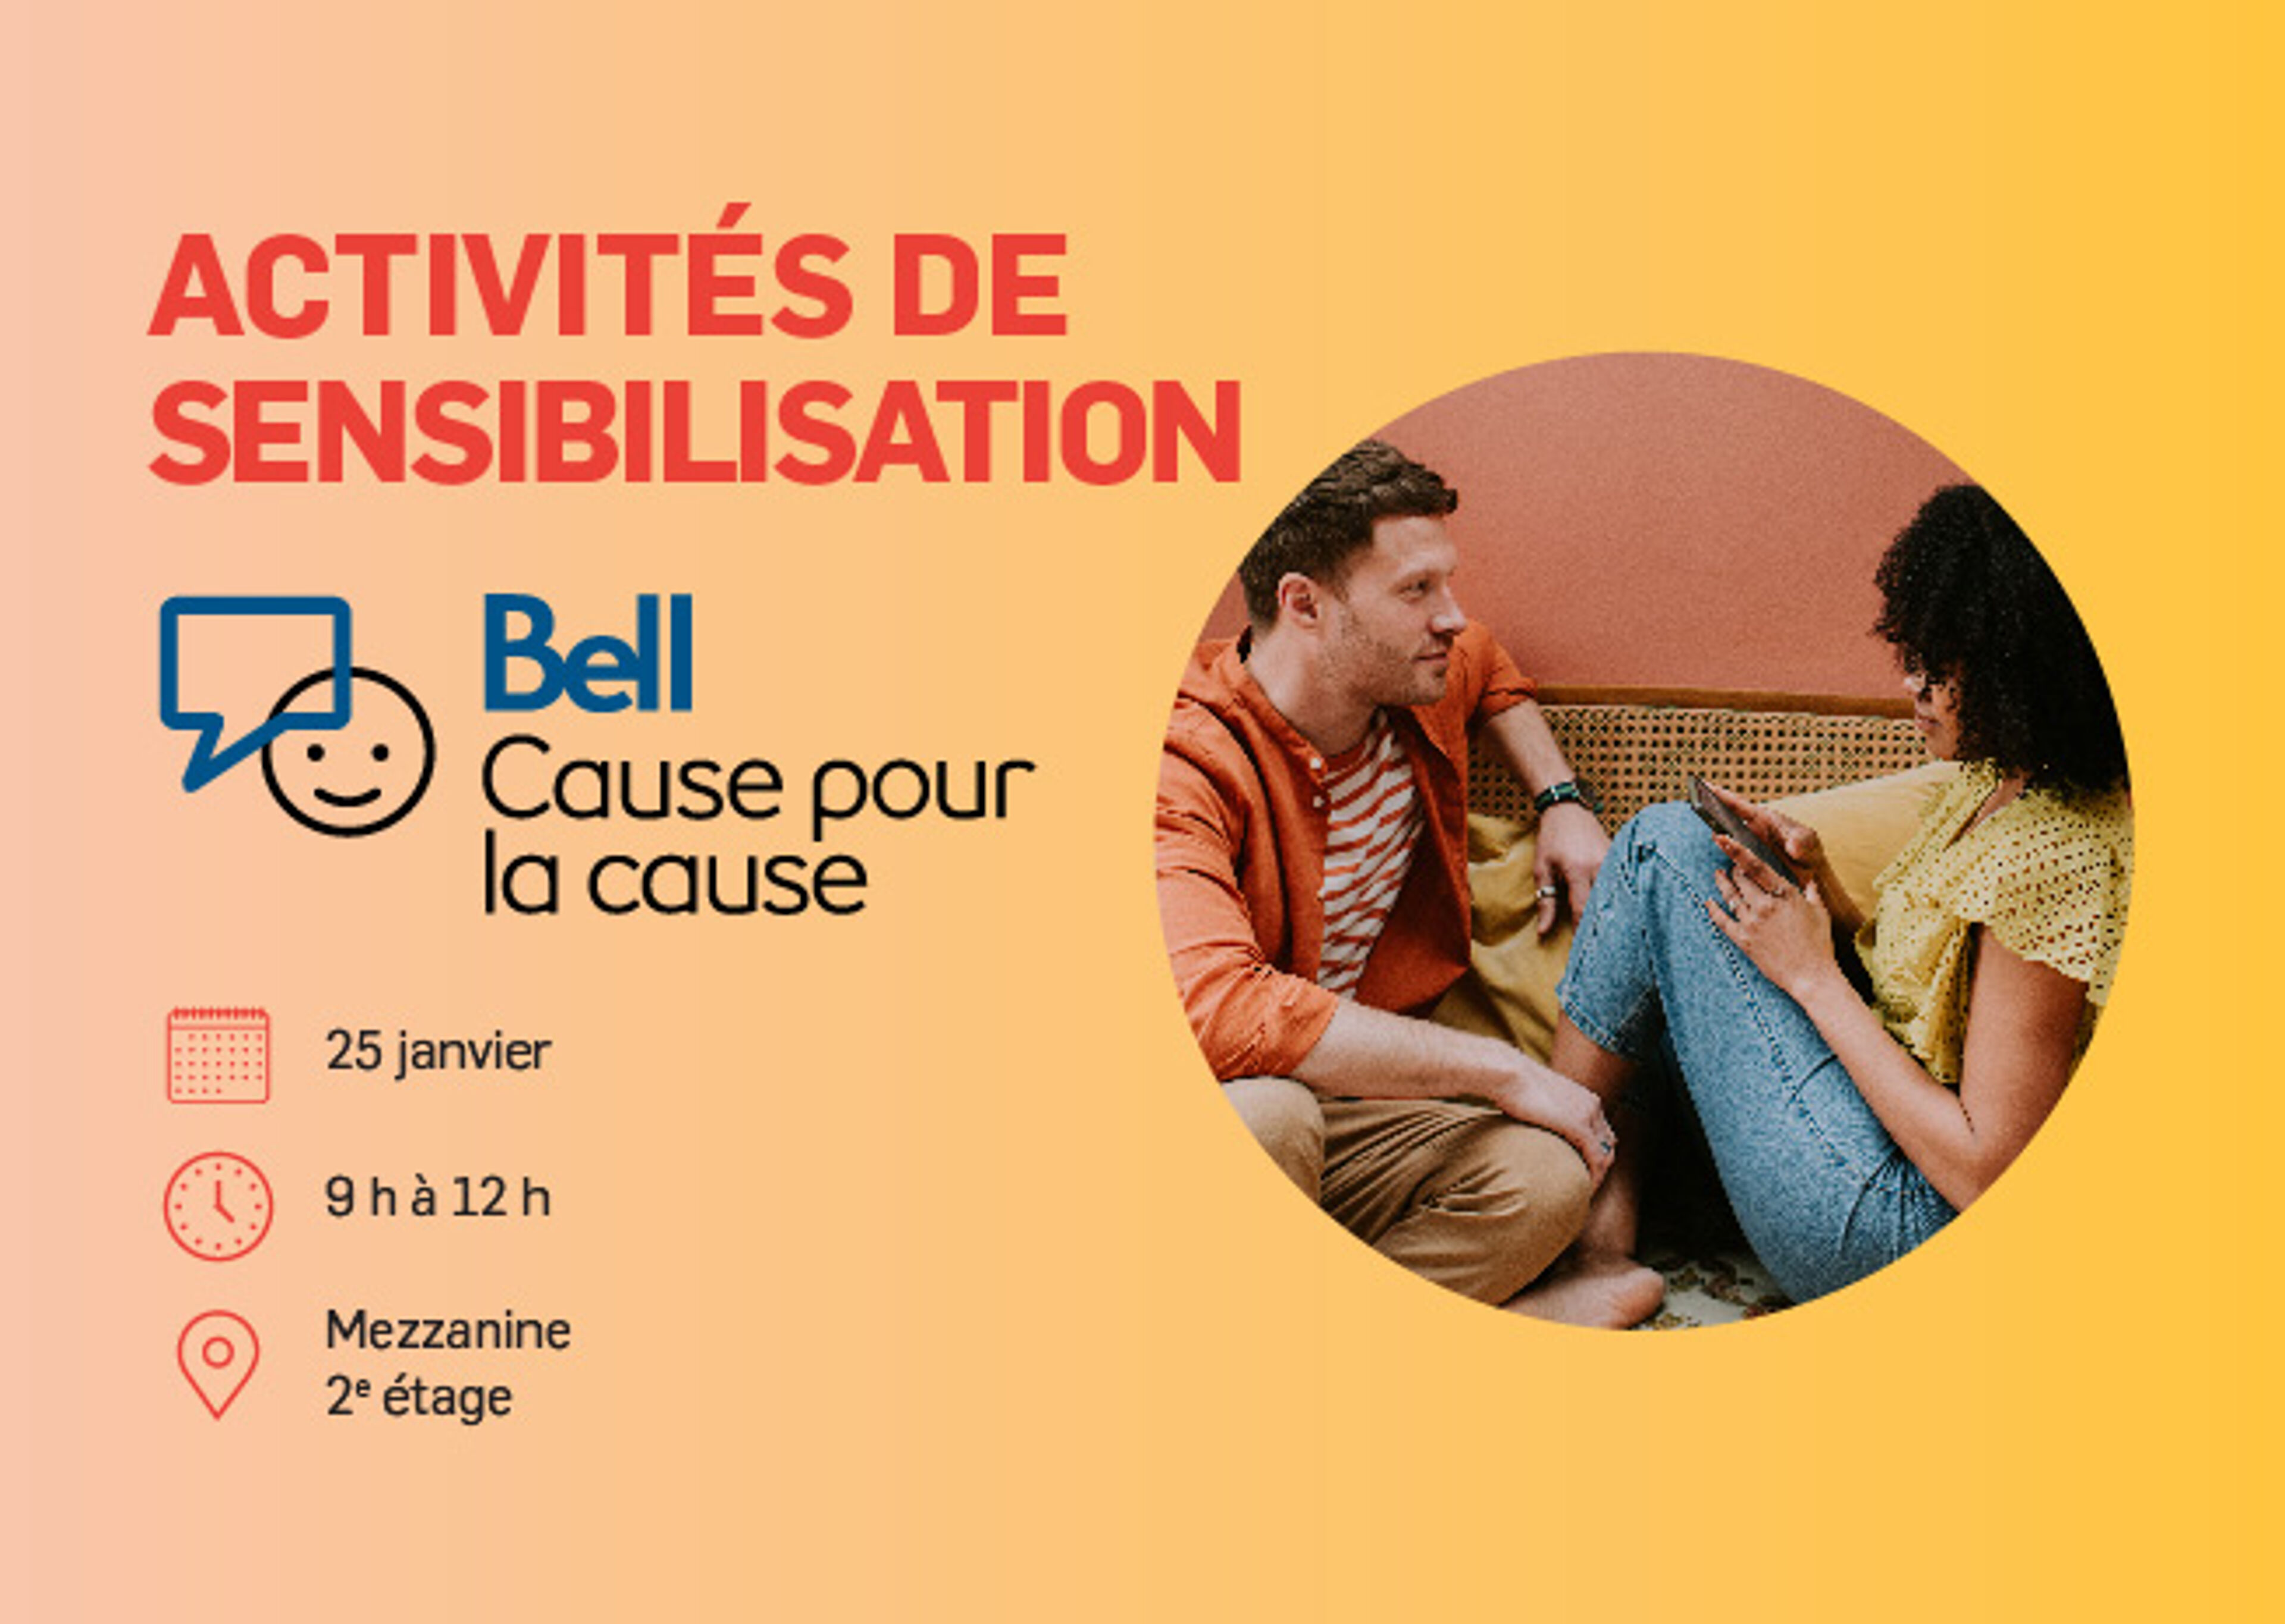 Image promotionnelle pour la campagne de sensibilisation de Bell, avec les détails de l'événement sur un fond jaune avec un homme et une femme en conversation.